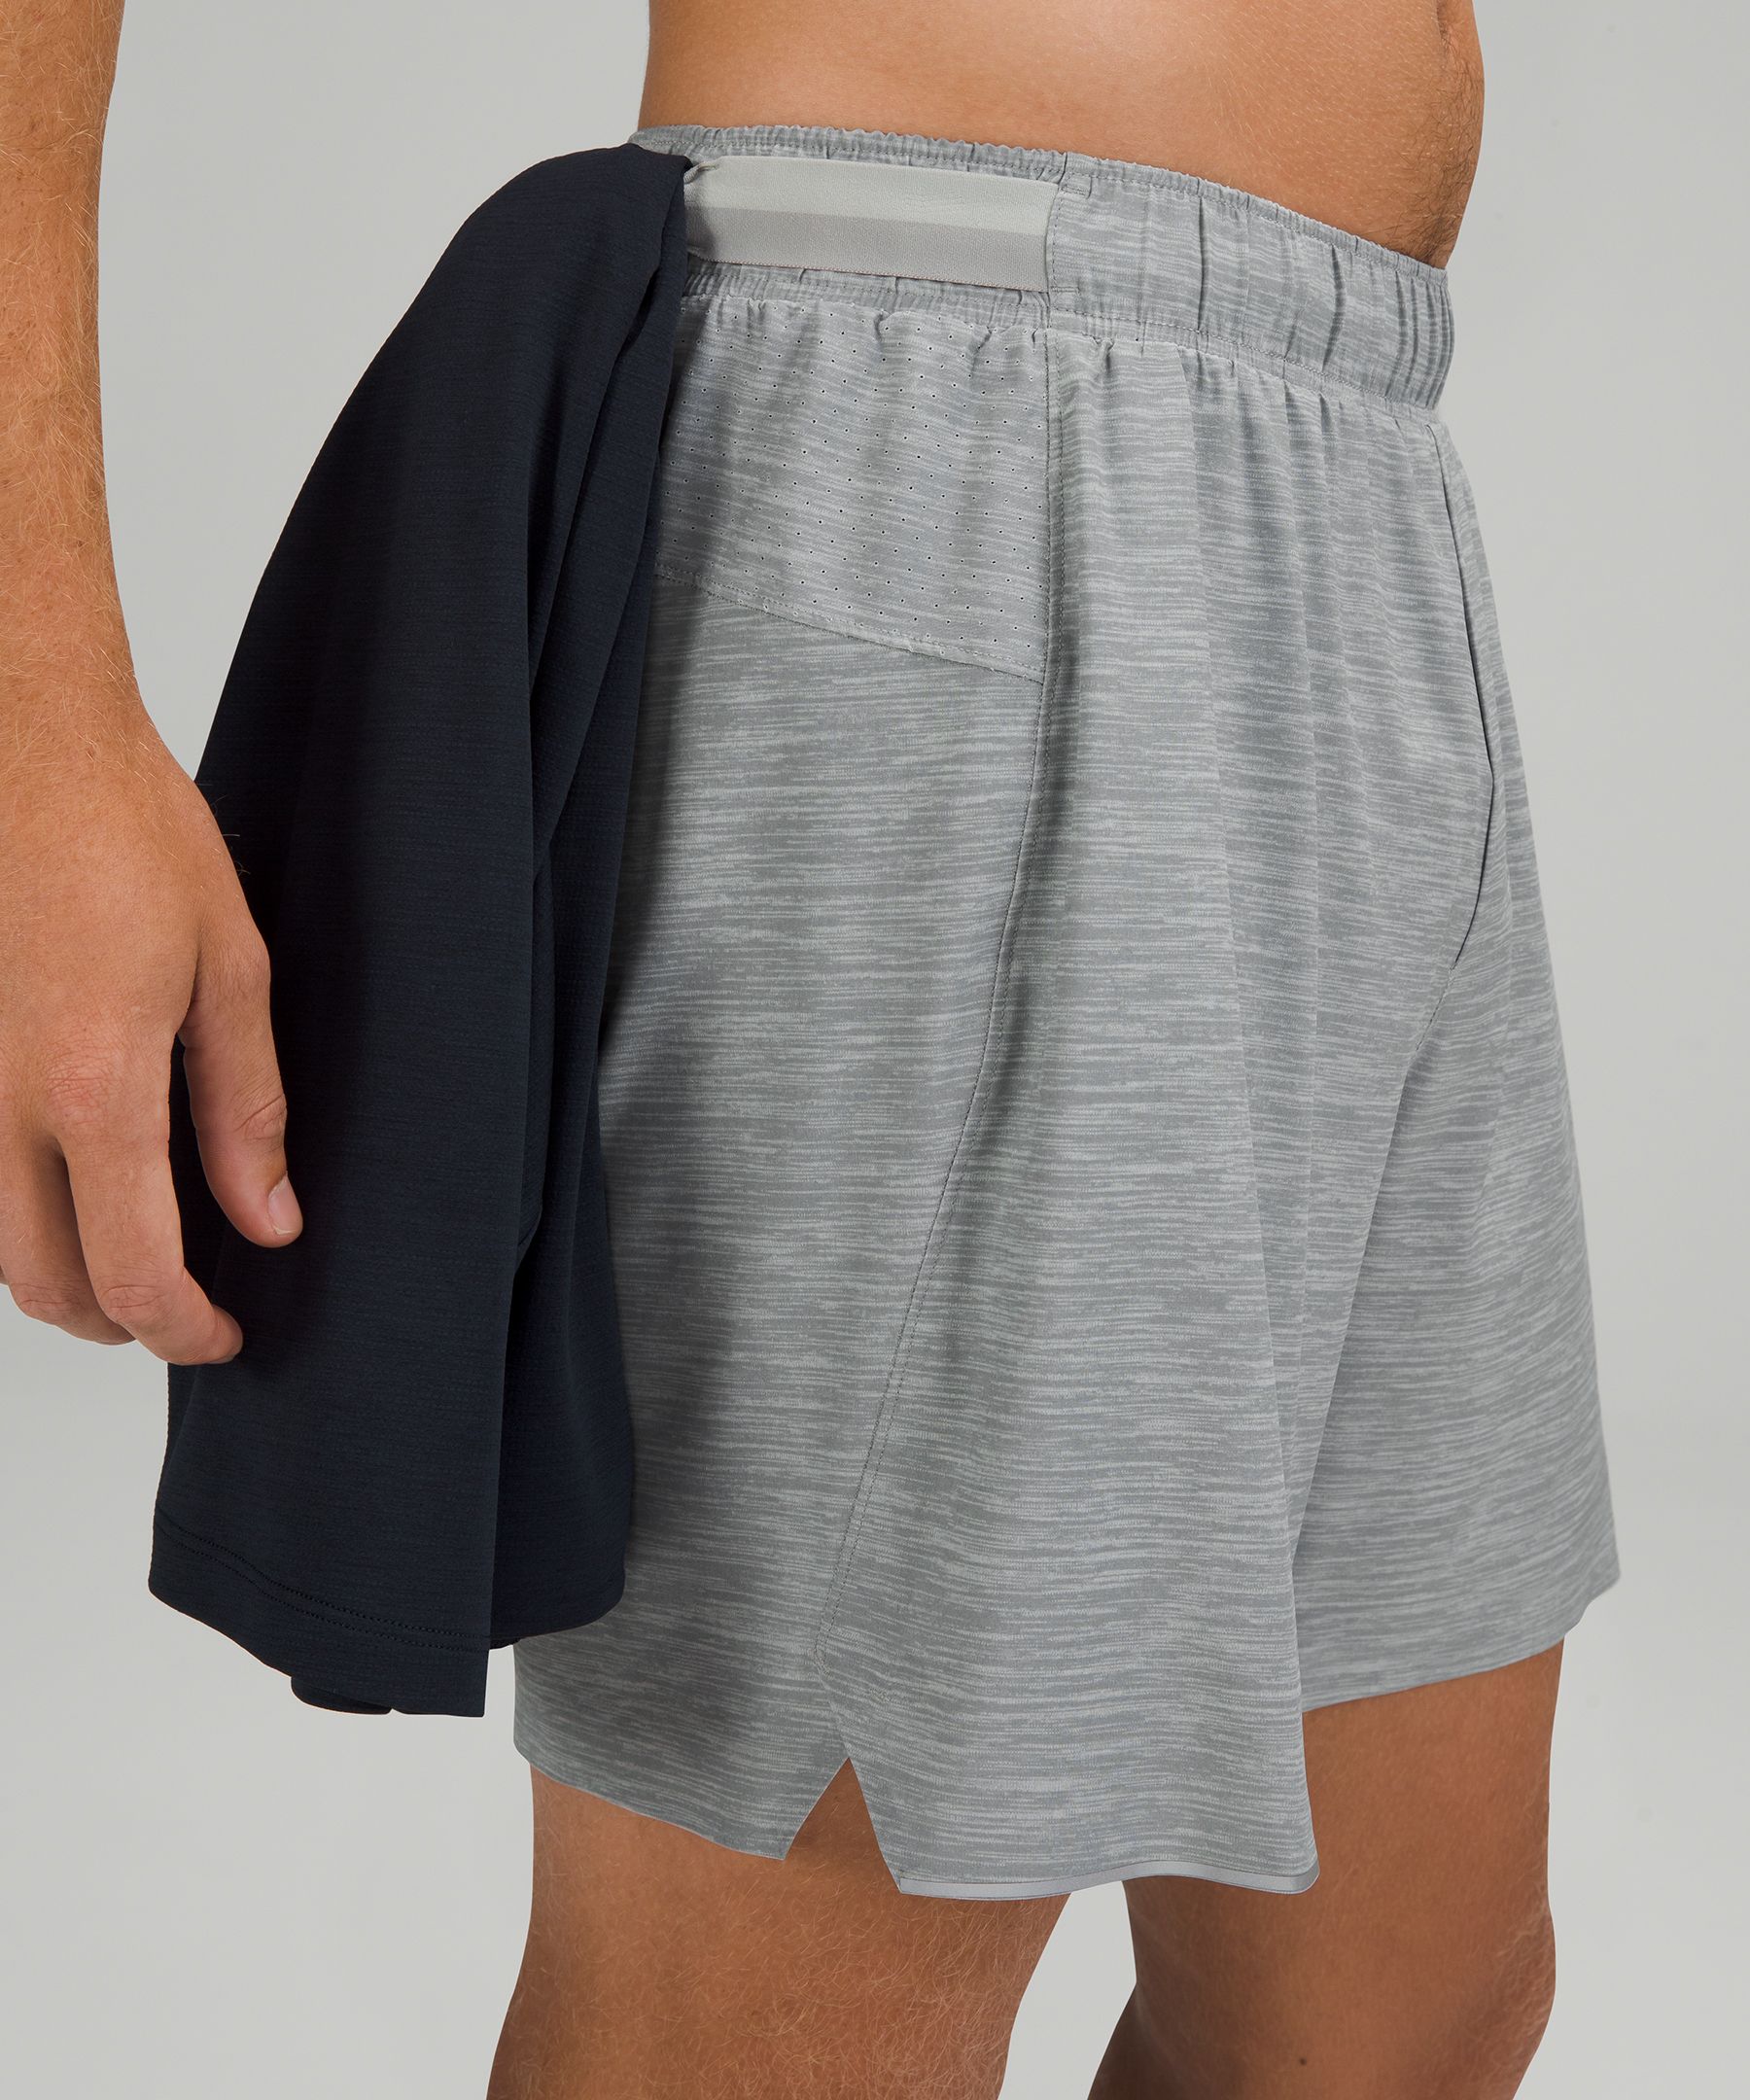 lululemon shorts without liner